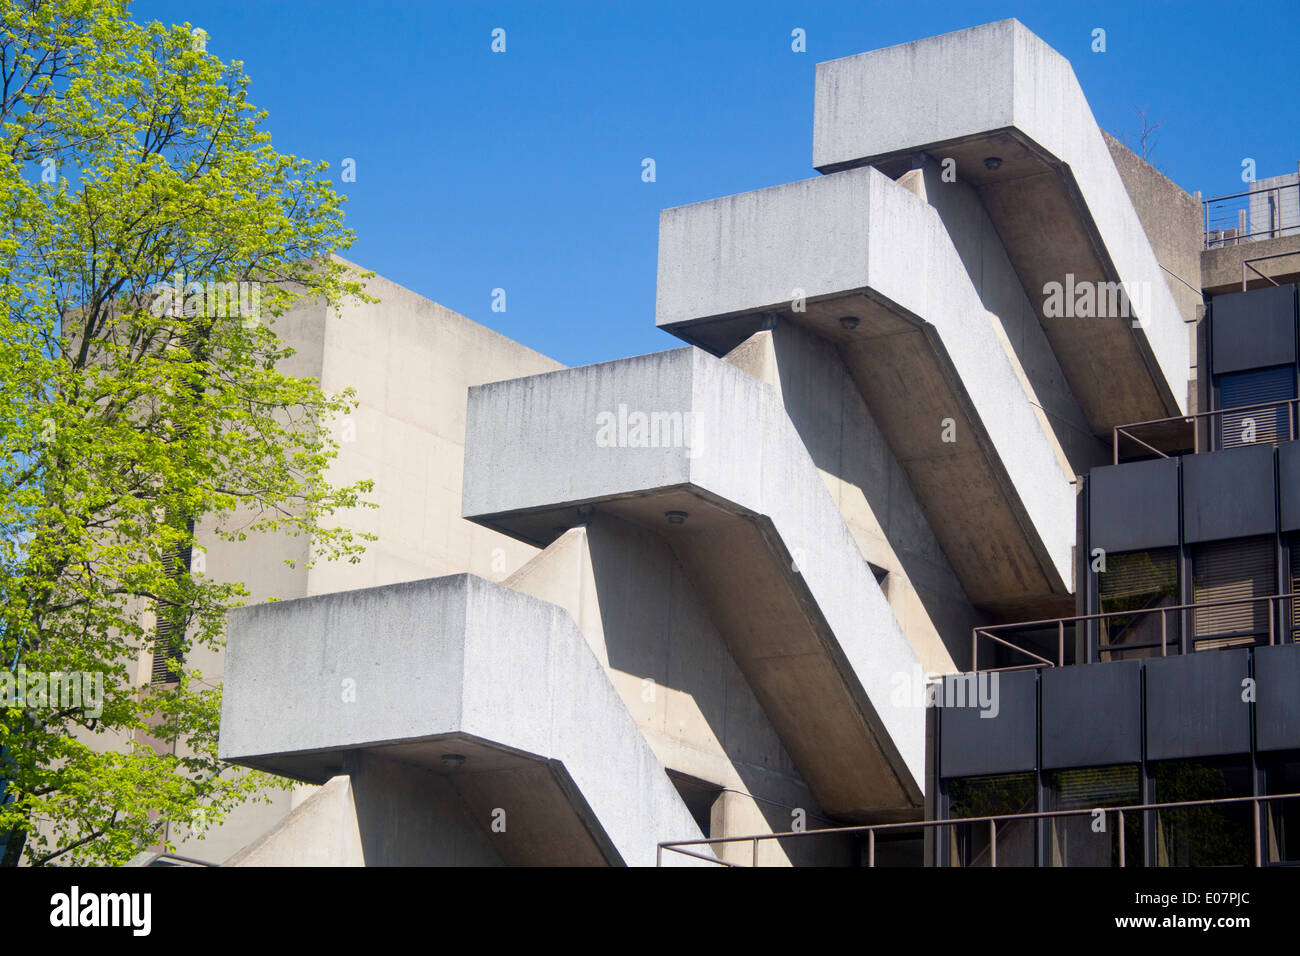 Institut d'éducation de l'Université de Londres Bloomsbury Londres Angleterre Royaume-uni béton architecture brutaliste Banque D'Images